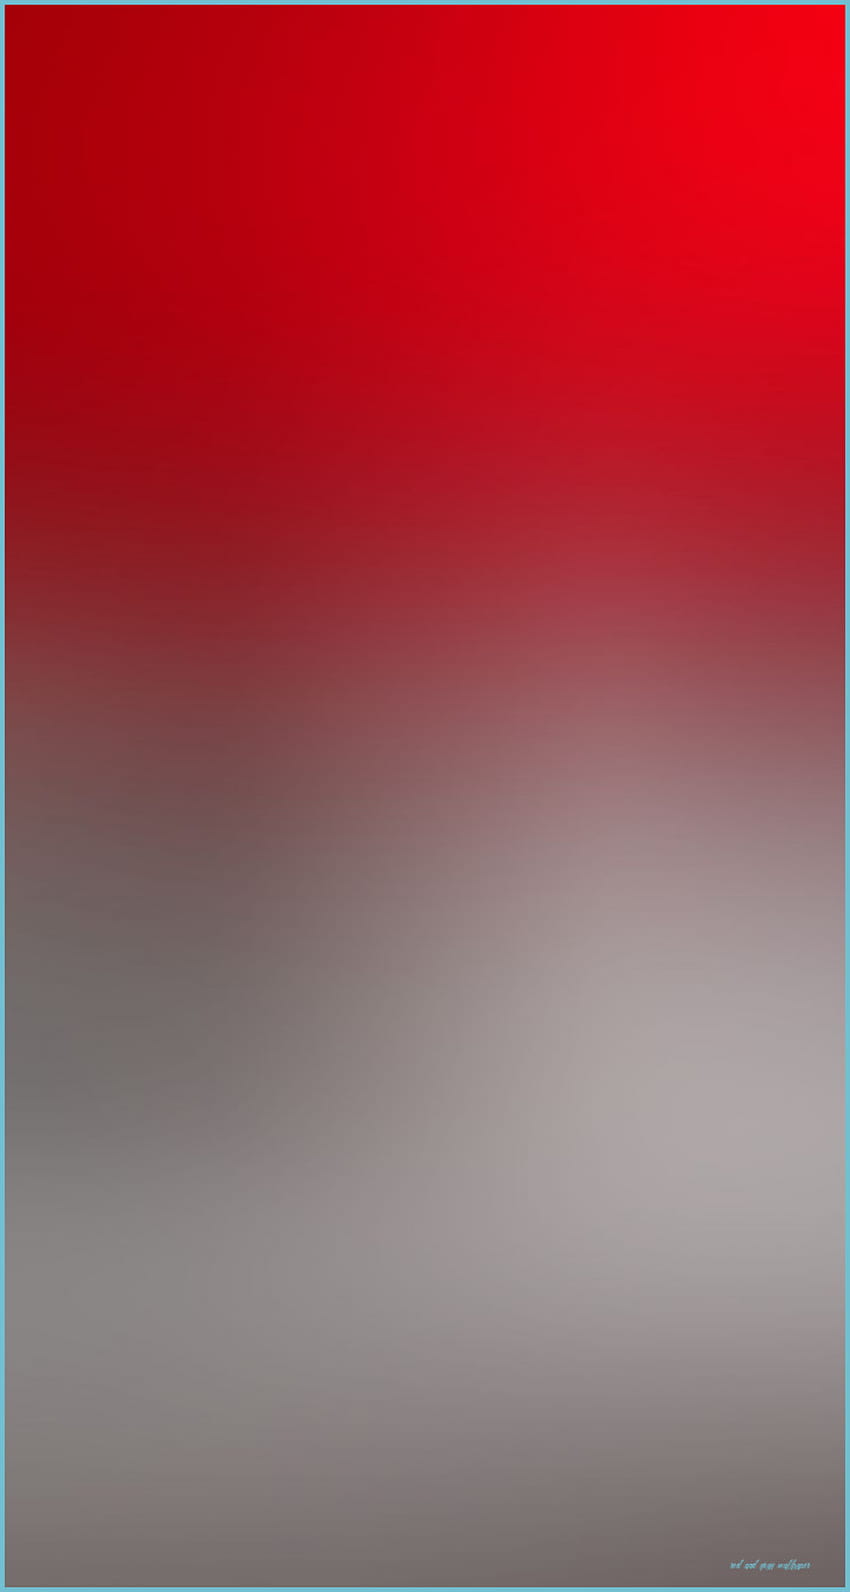 レッド IPhone 11C - トップ レッド IPhone 11C 背景 - 赤とグレー HD電話の壁紙